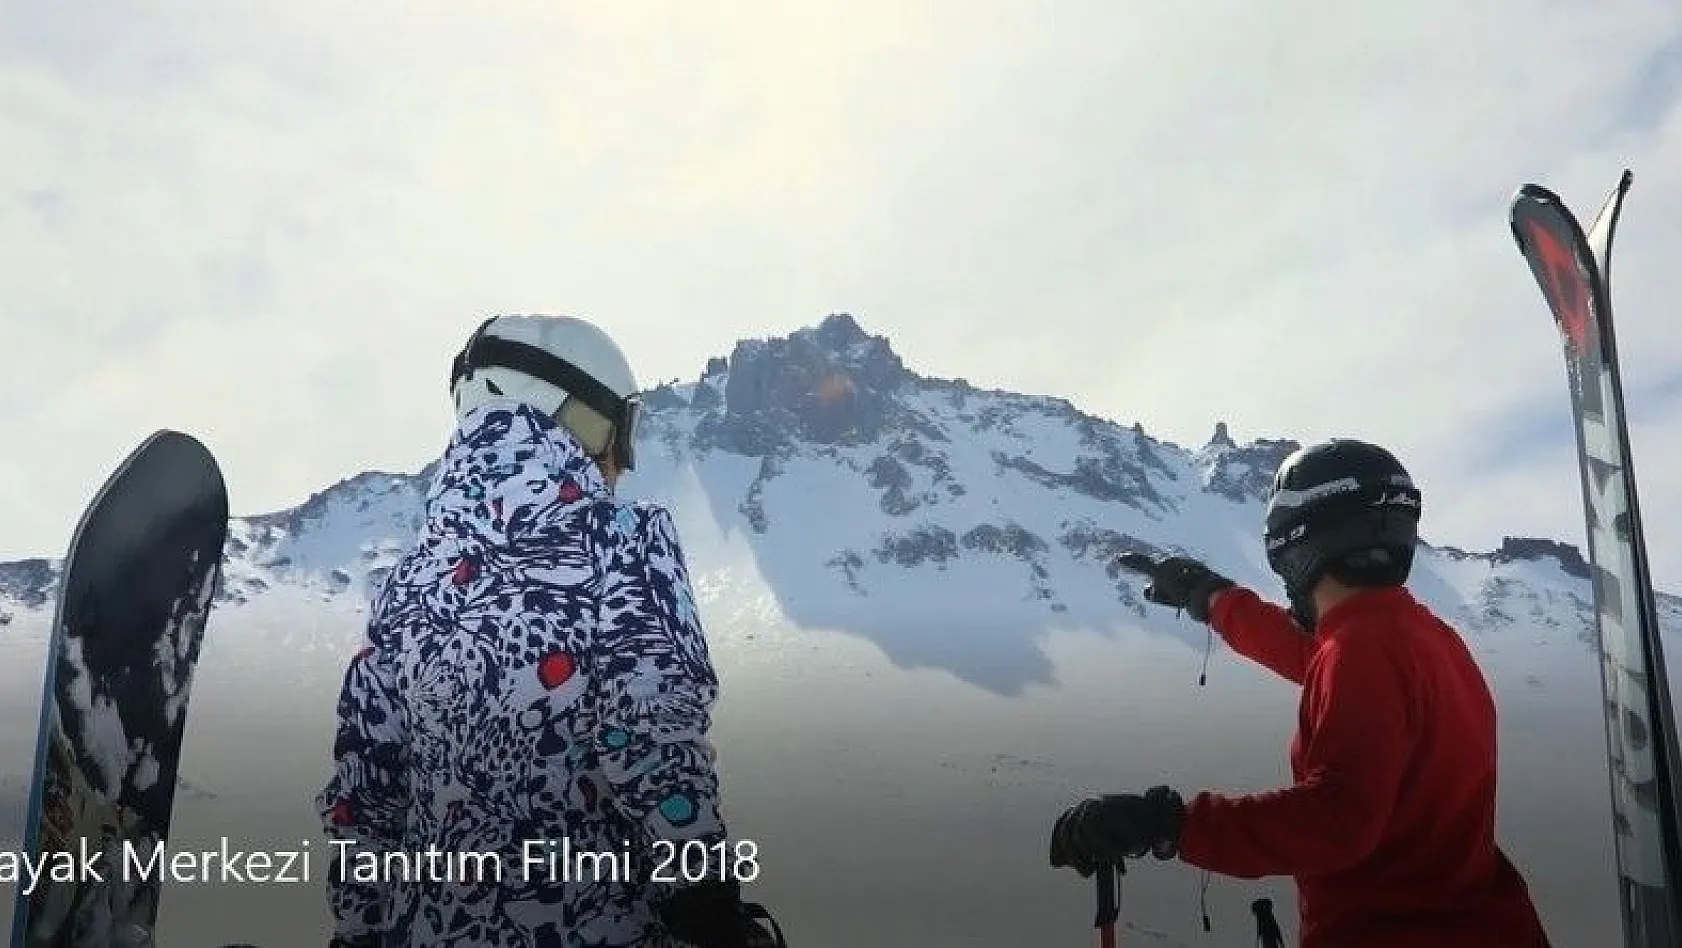 Erciyes Kayak Merkezi'nin tanıtım filmi büyük ilgi gördü